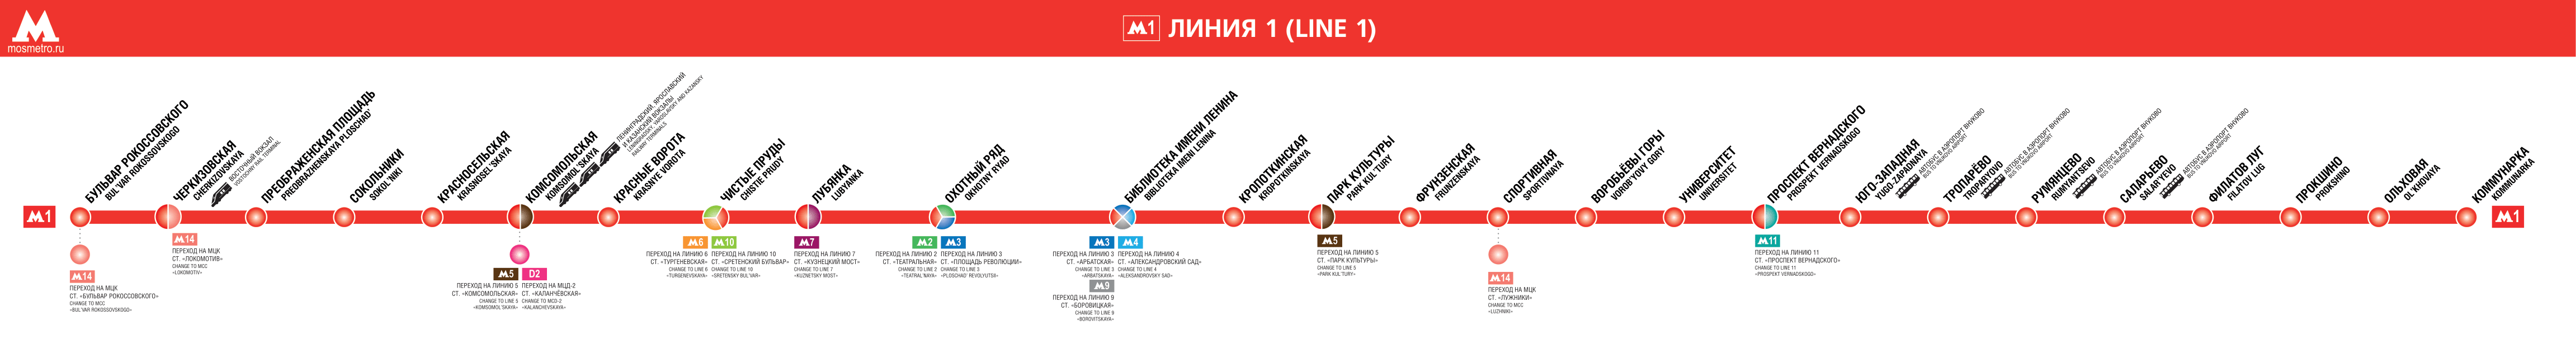 莫斯科 — Metro — Maps of Individual Lines; 莫斯科 — Metro — [1] Sokolnicheskaya Line